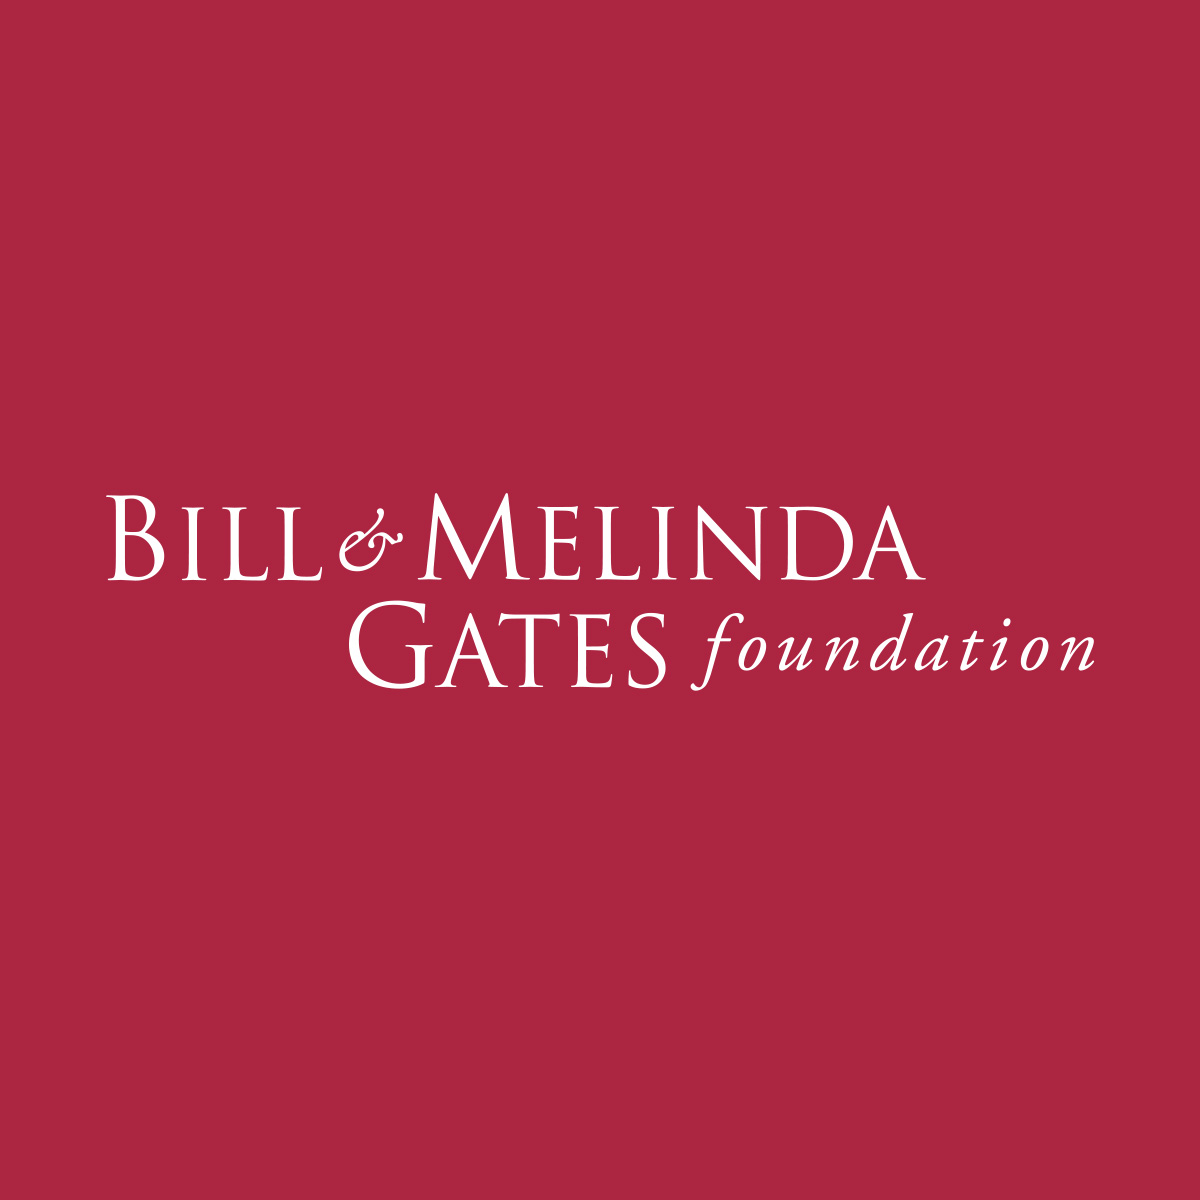 盖茨基金会支持<font color="red">抗艾滋病毒</font>和疟疾研究